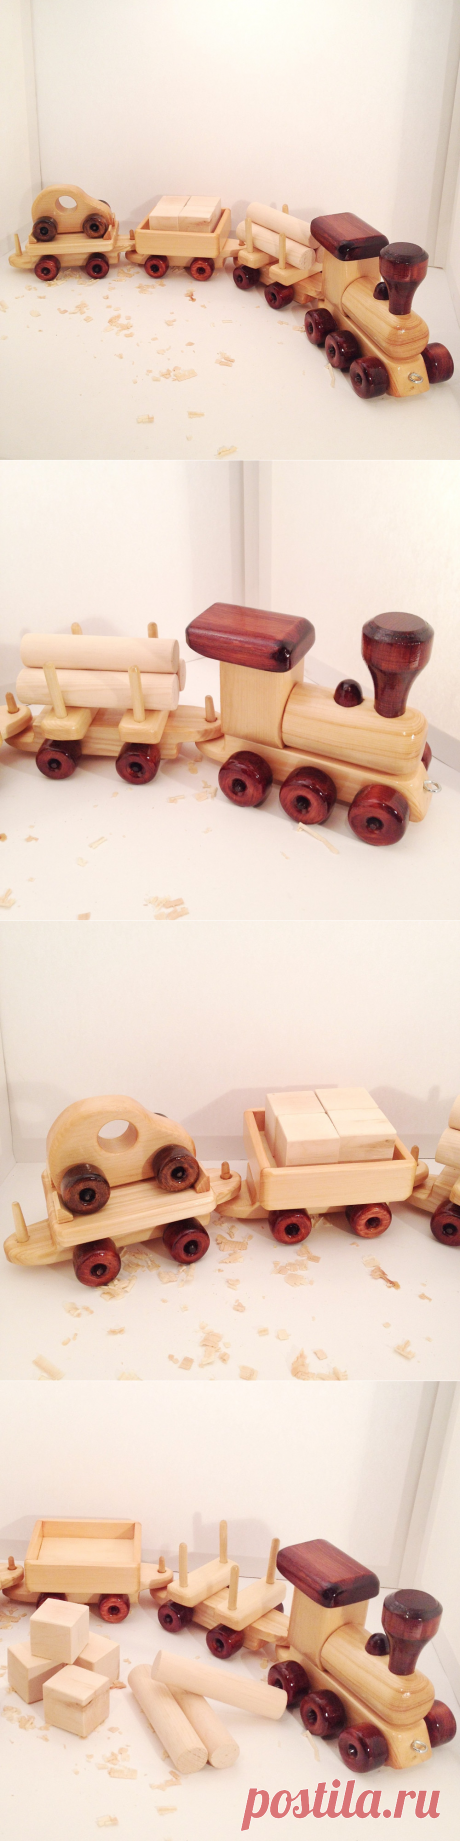 Купить игрушку деревянный паровозик №2 от ART WOOD | Mellroot